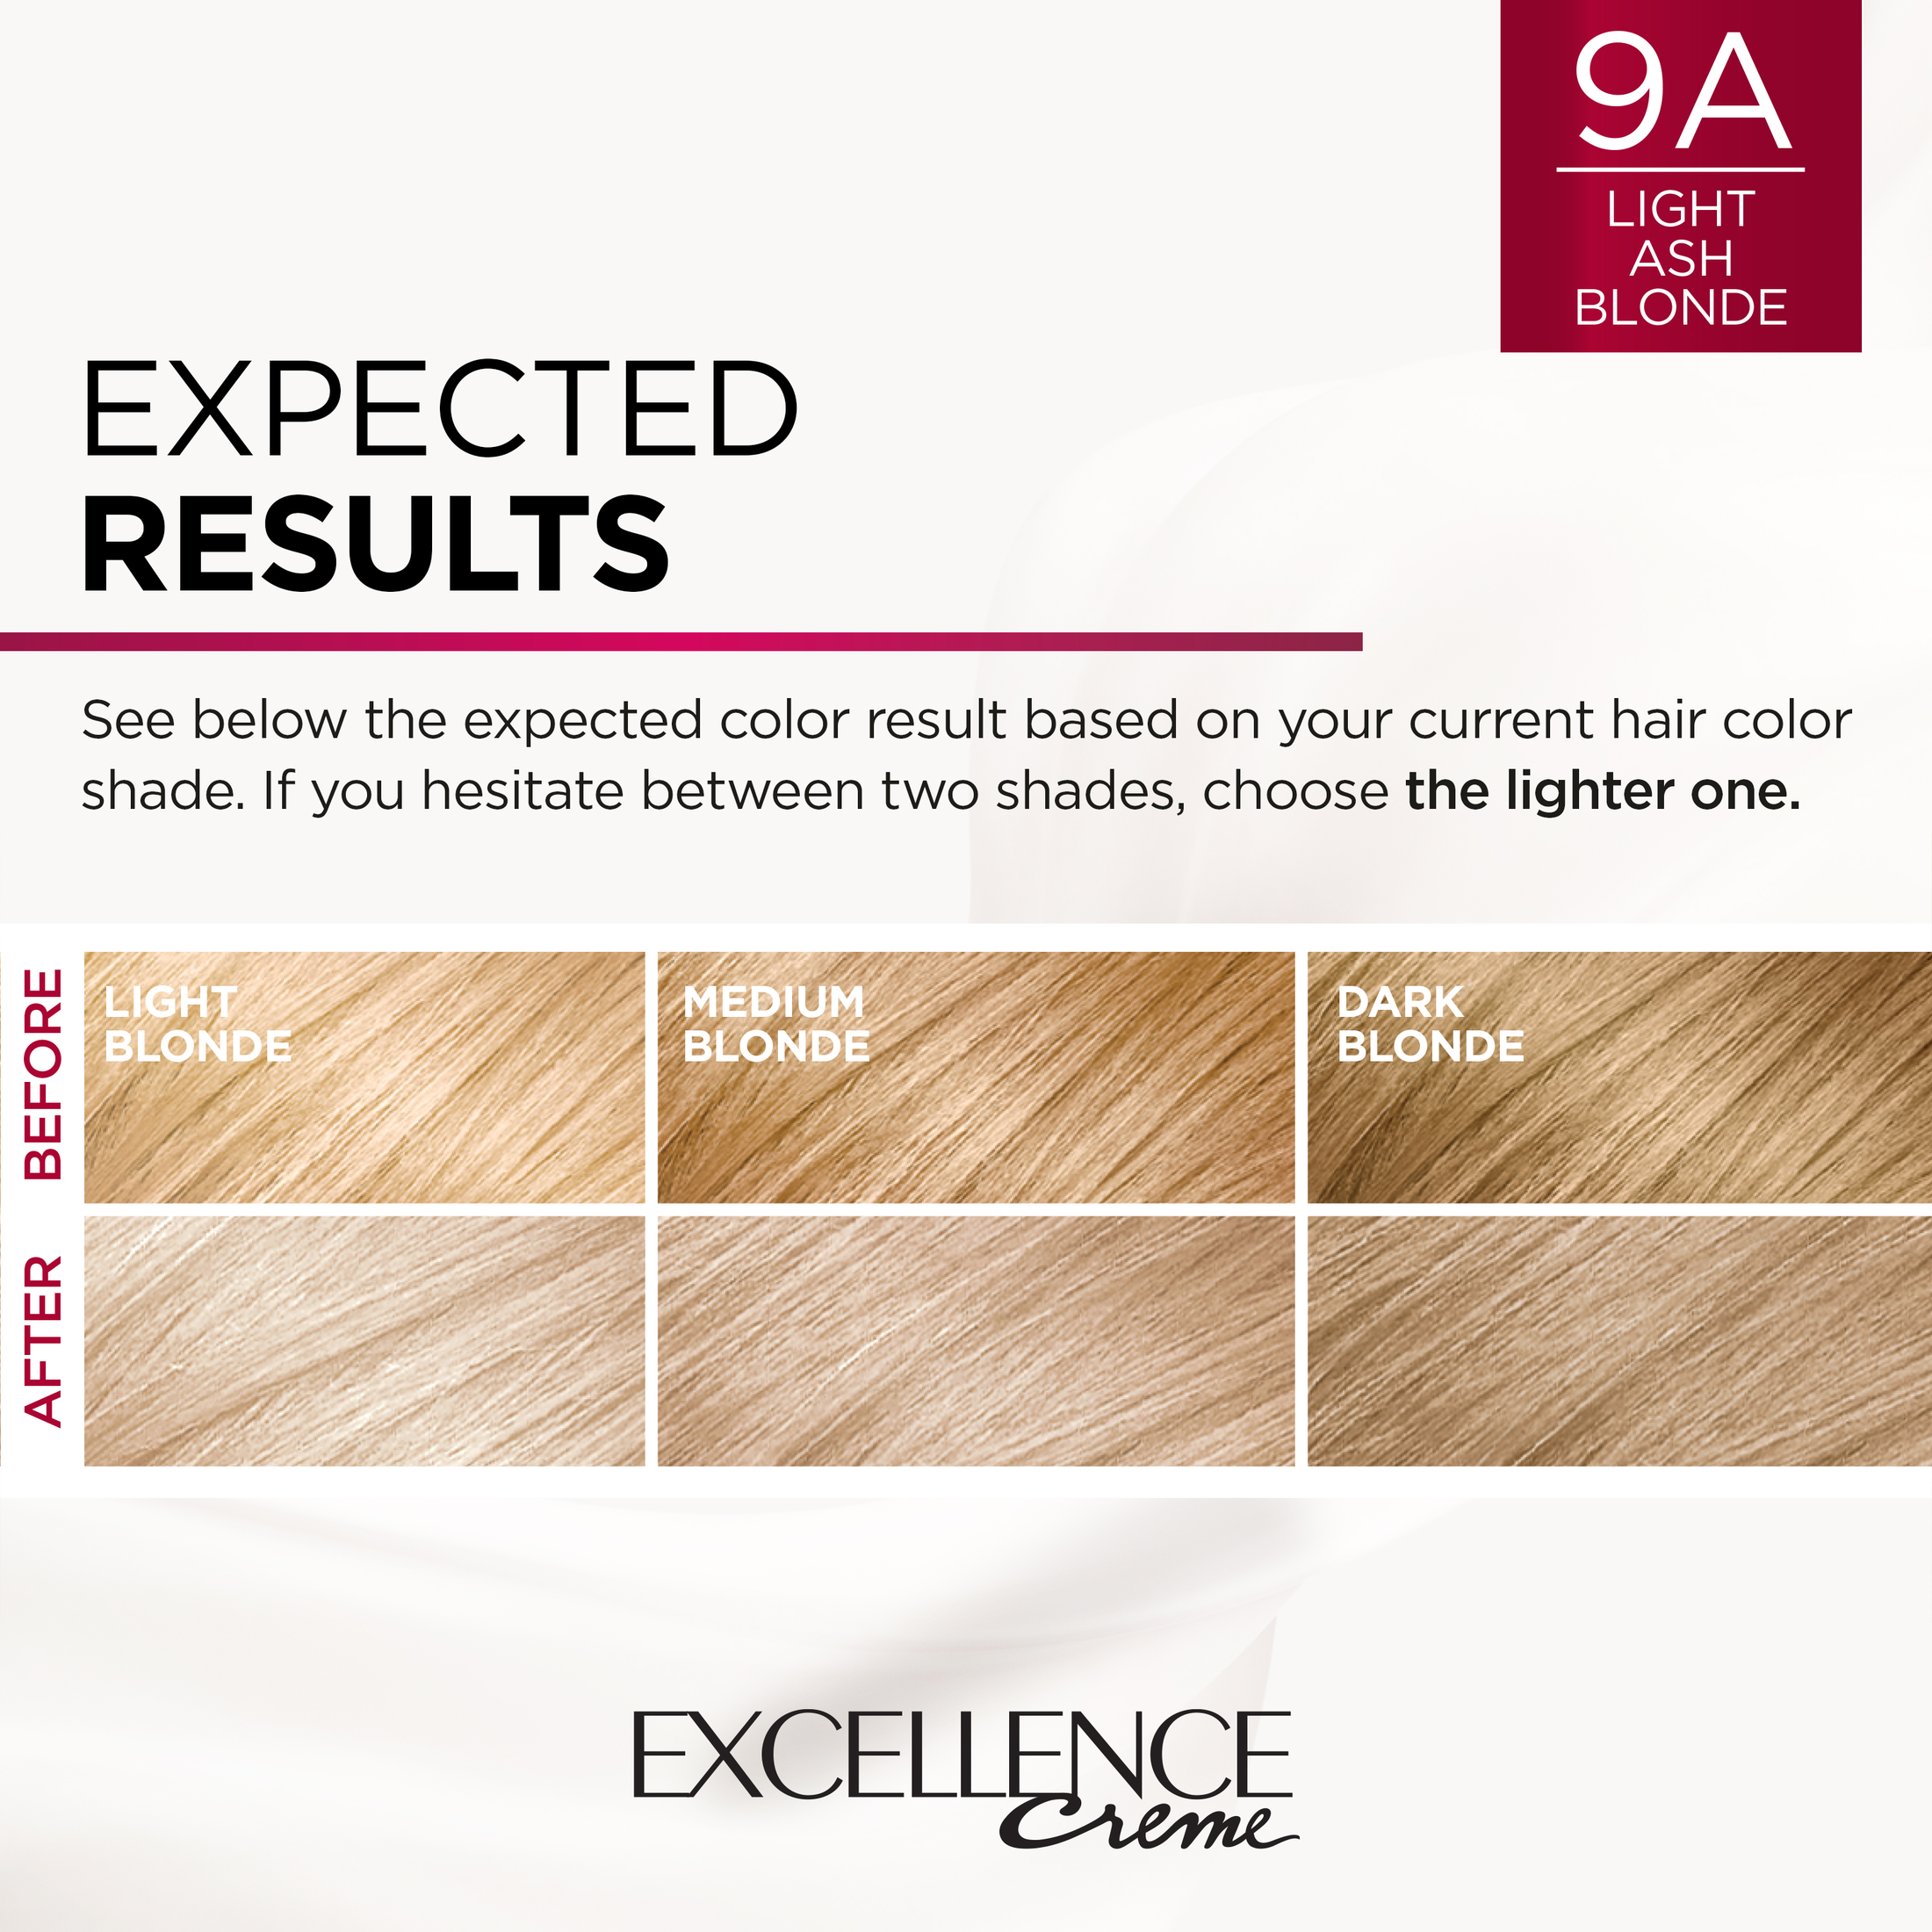 L'Oreal Paris Excellence Creme Permanent Hair Color, 9A Light Ash Blonde - image 5 of 8